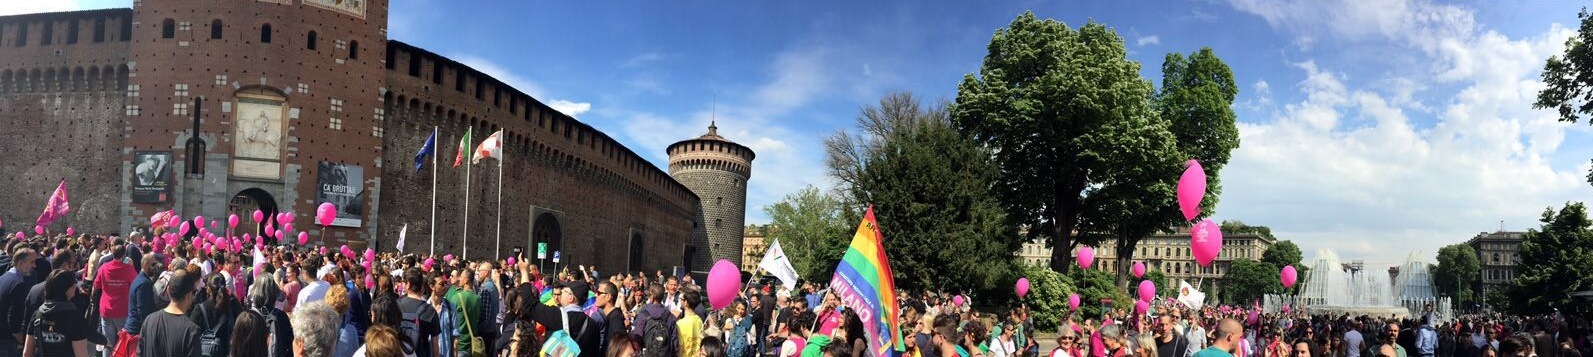 Festa delle Famiglie Arcobaleno a Milano: ecco foto e video!